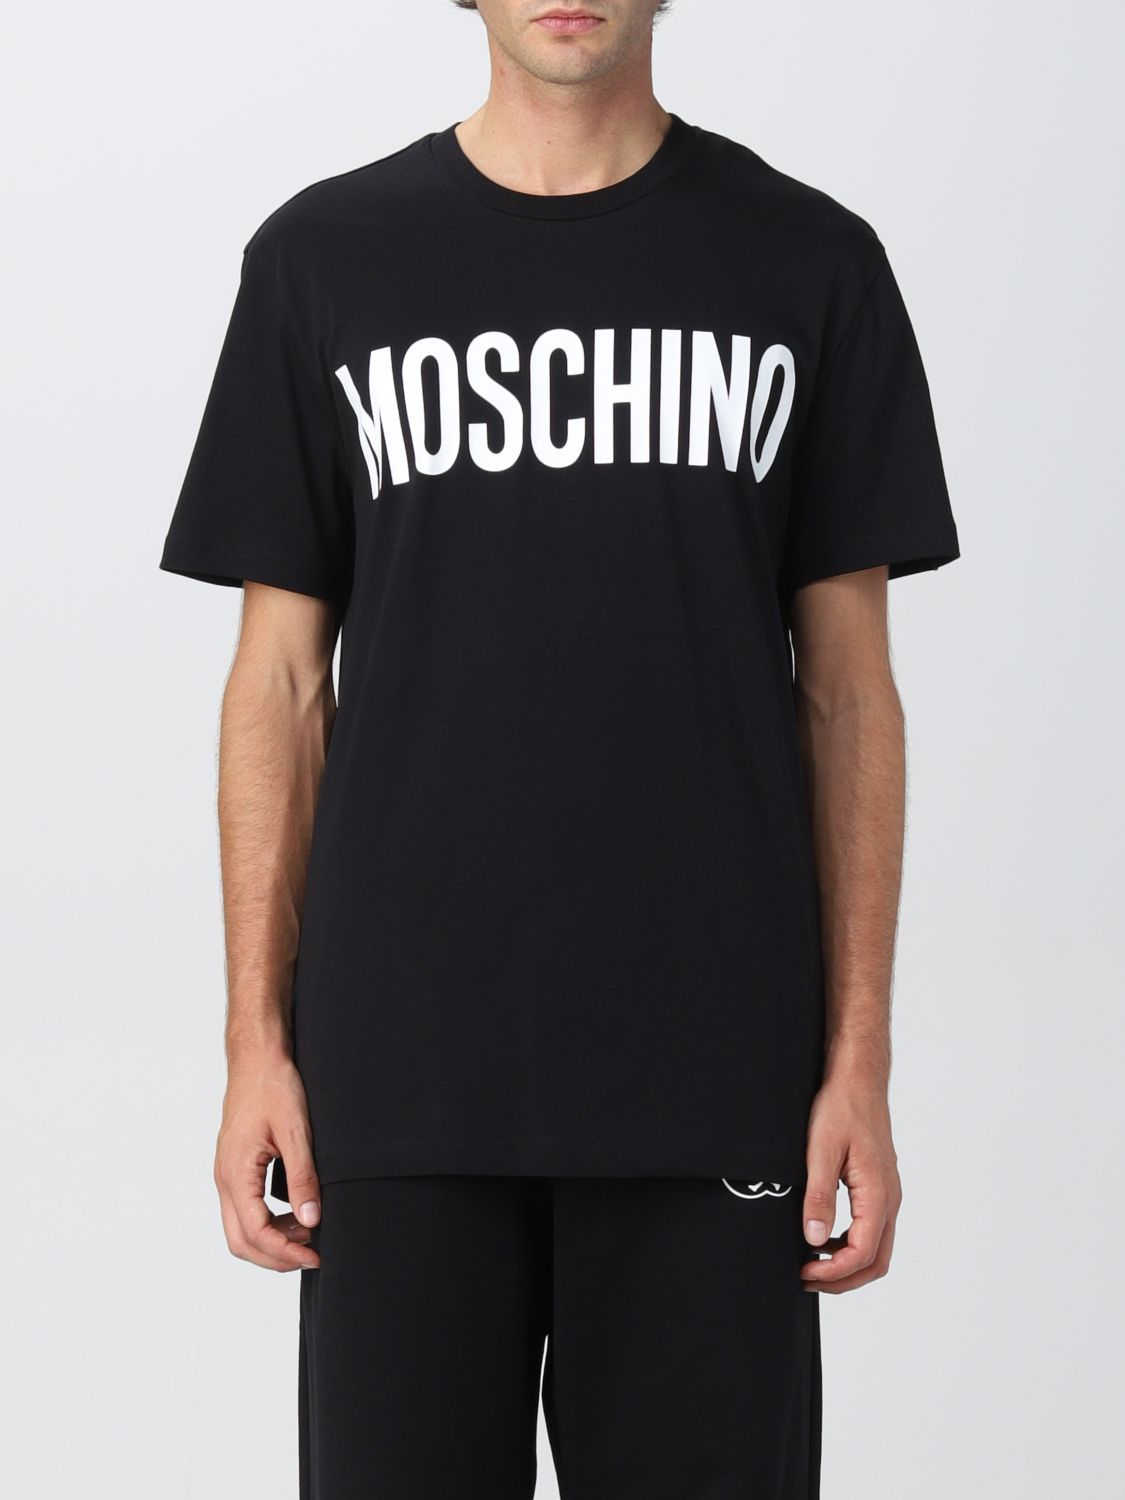 Tシャツ モスキーノ: Tシャツ Moschino Couture メンズ ブラック 1